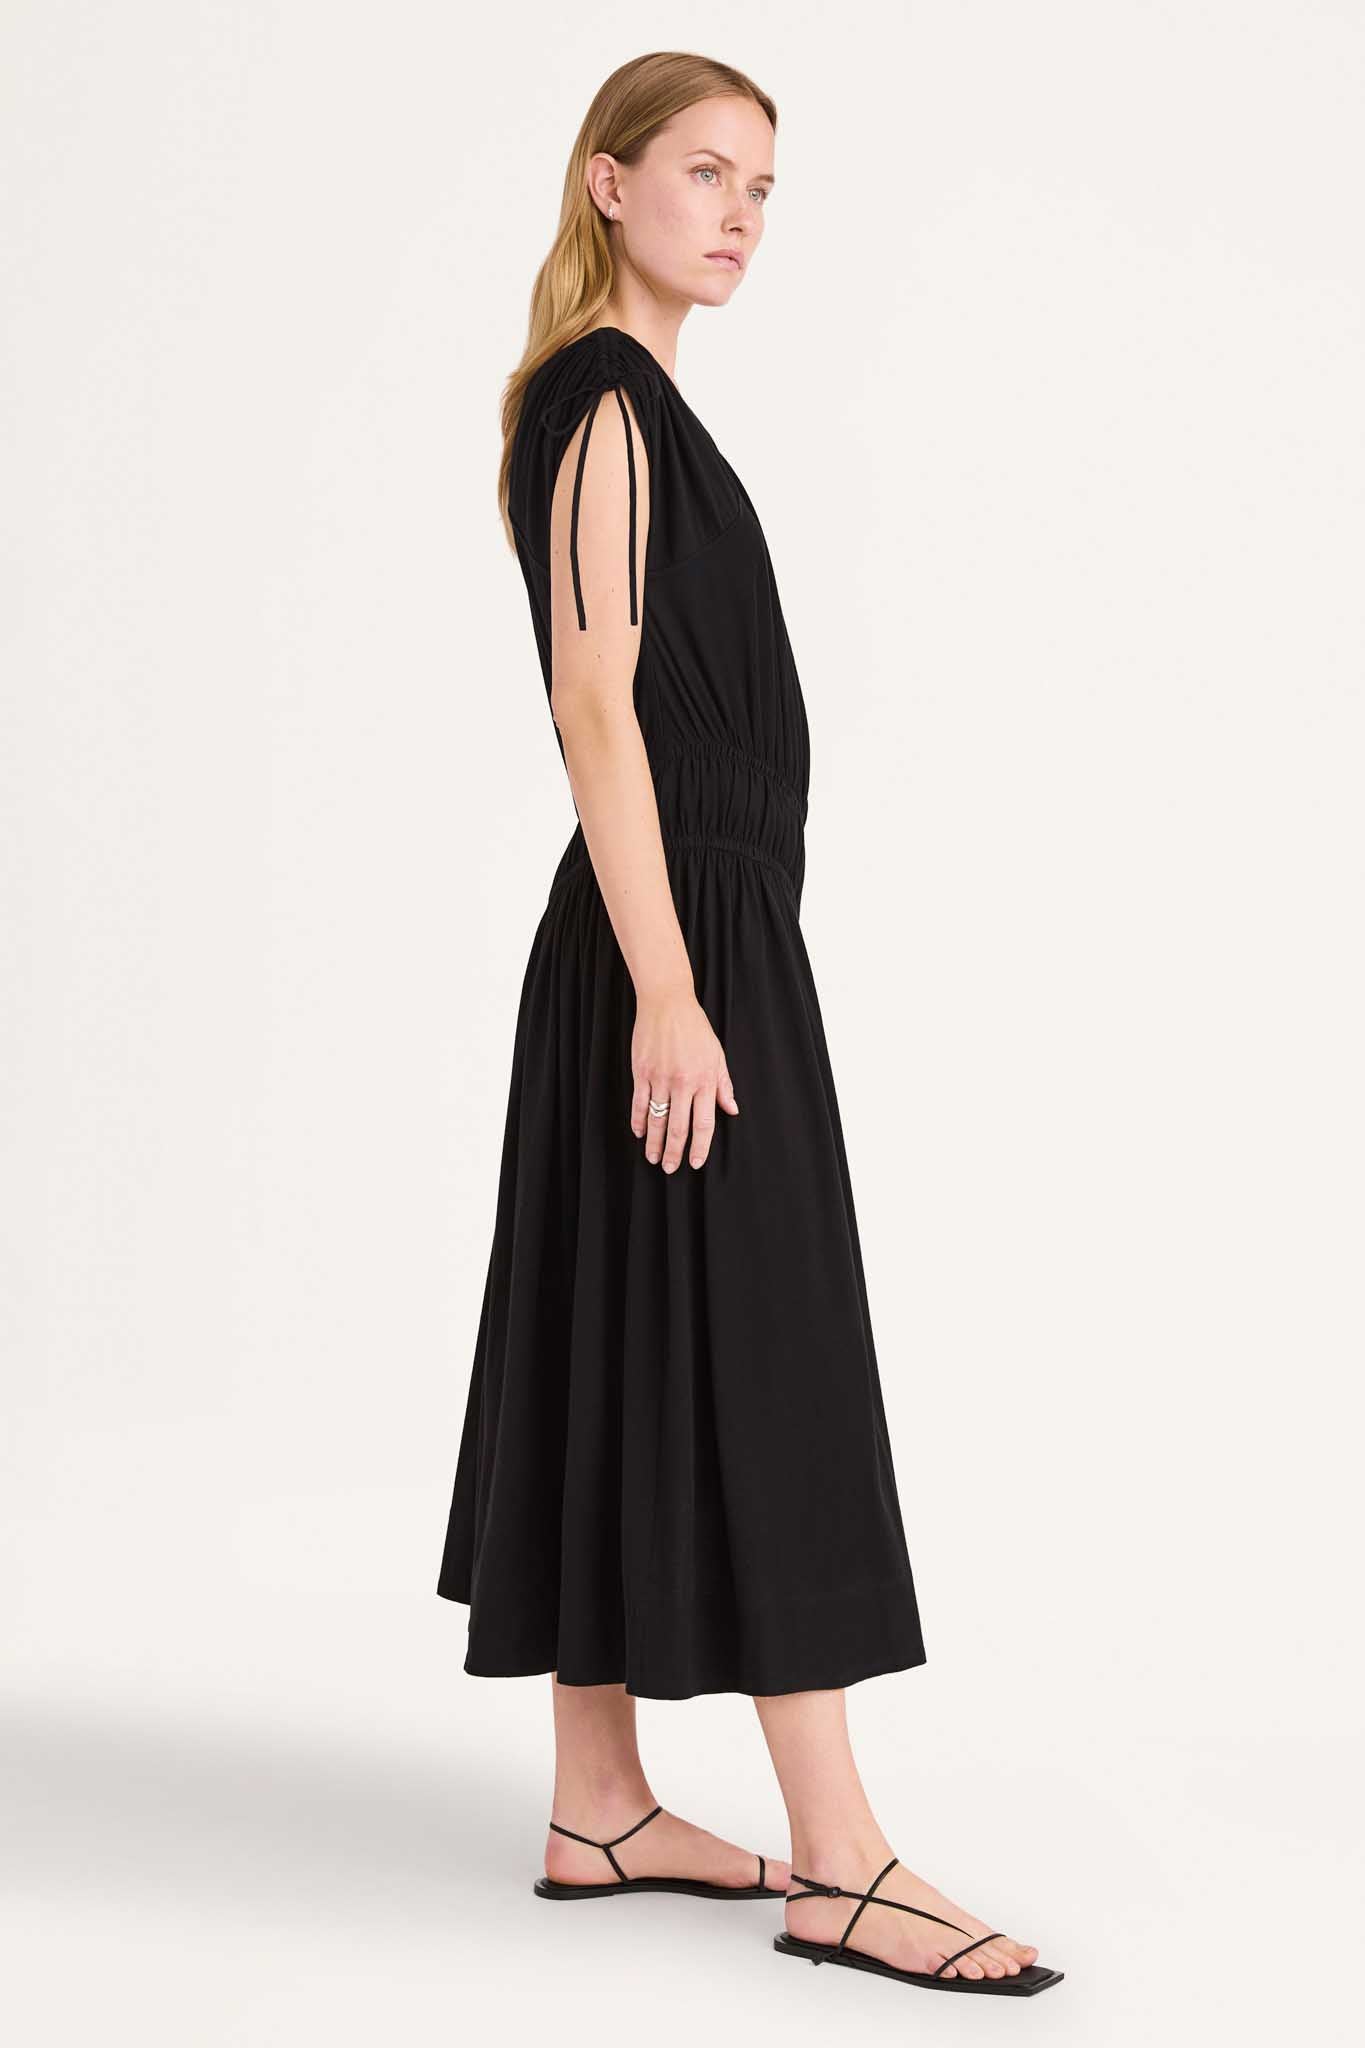 Zephyr Dress in Black – Merlette